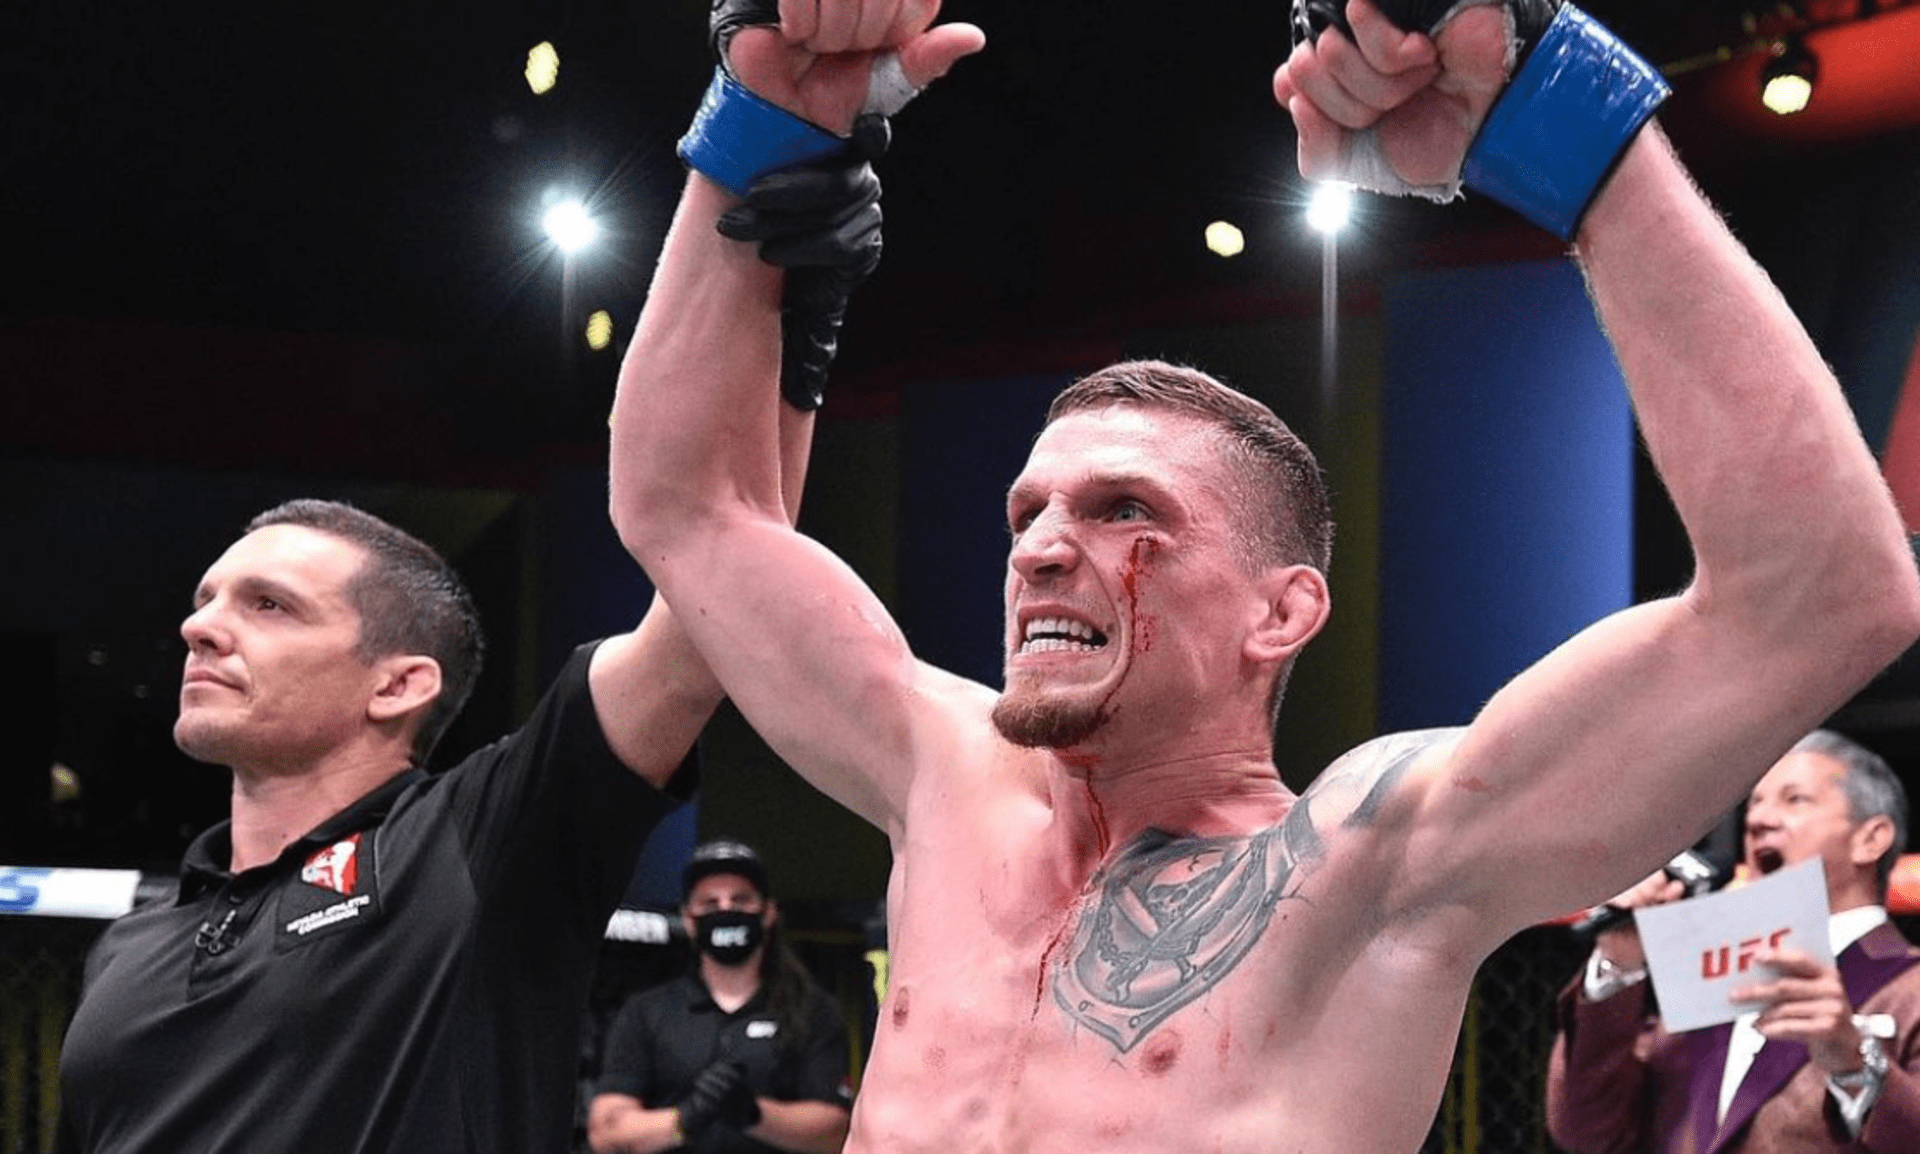 Českého zápasníka Davida Dvořáka čeká další vystoupení v nejslavnější organizaci UFC